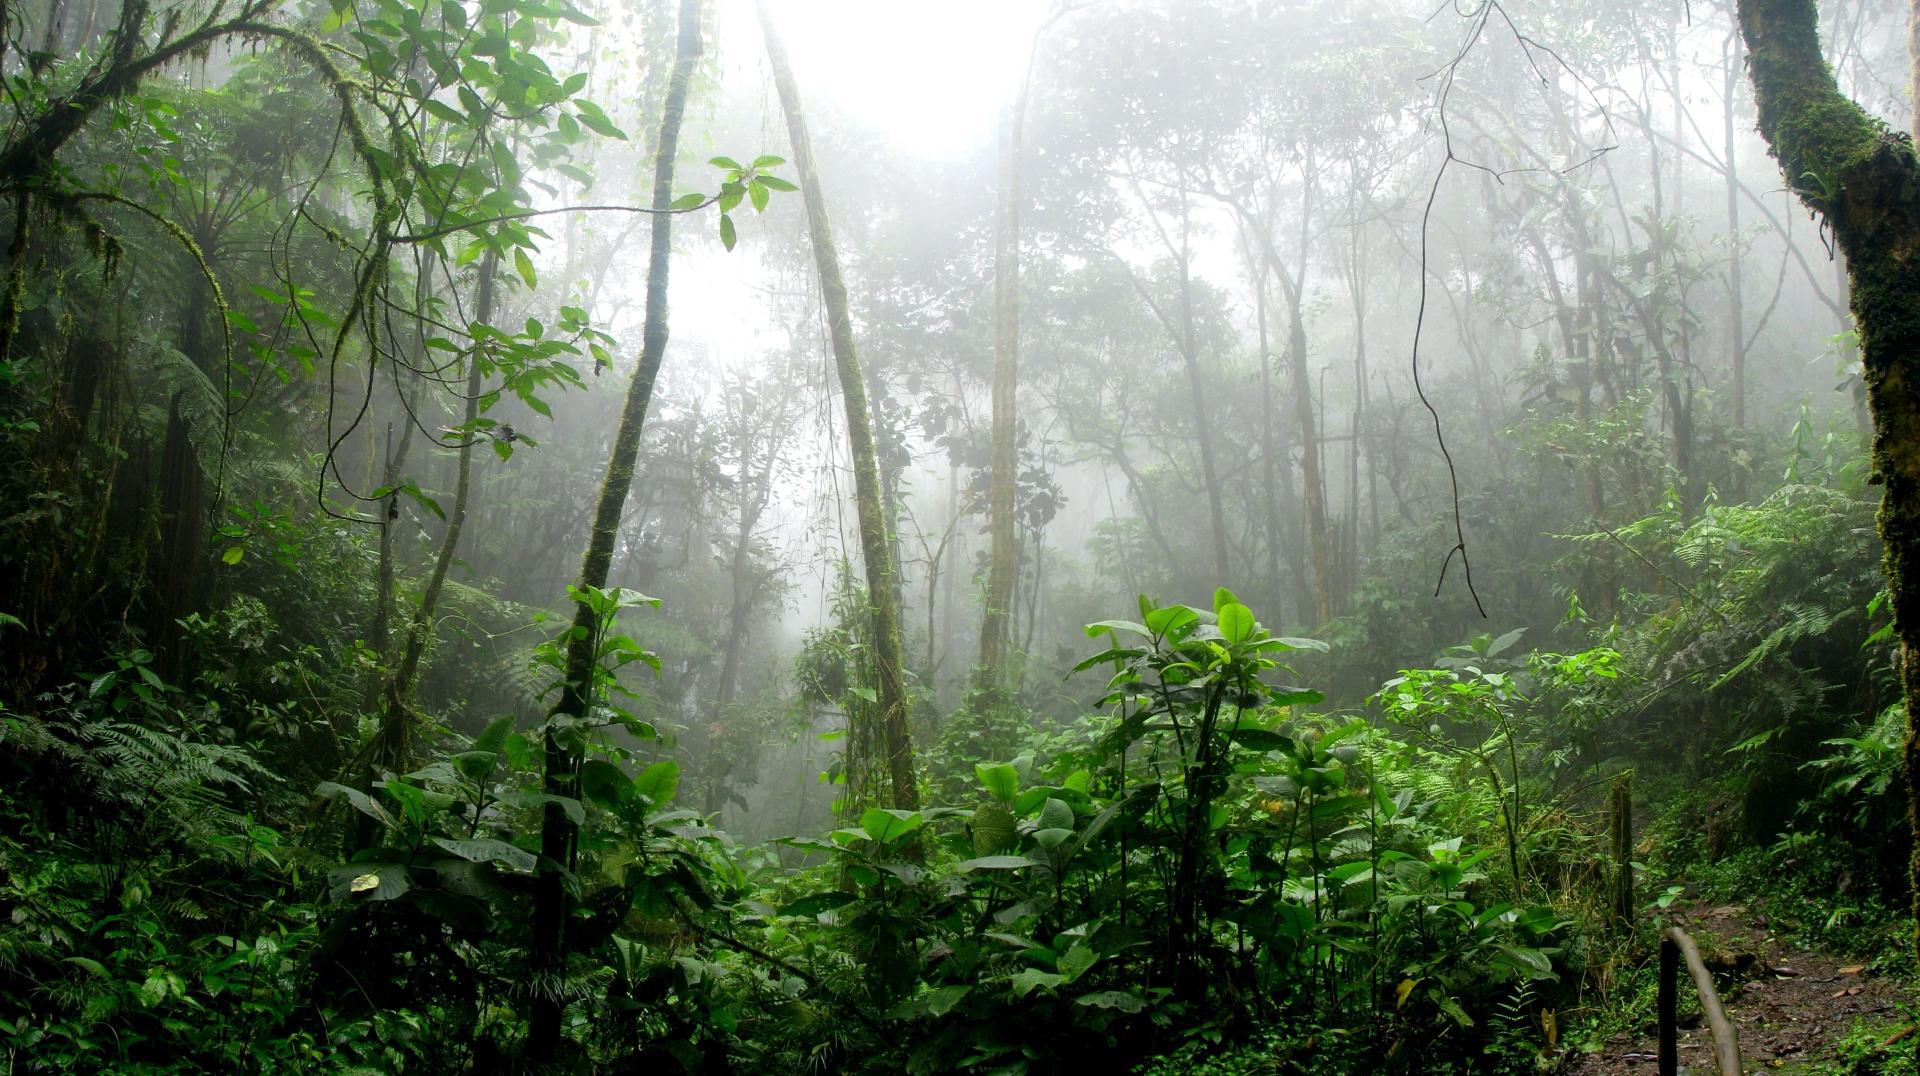 Rainforest in the Fog